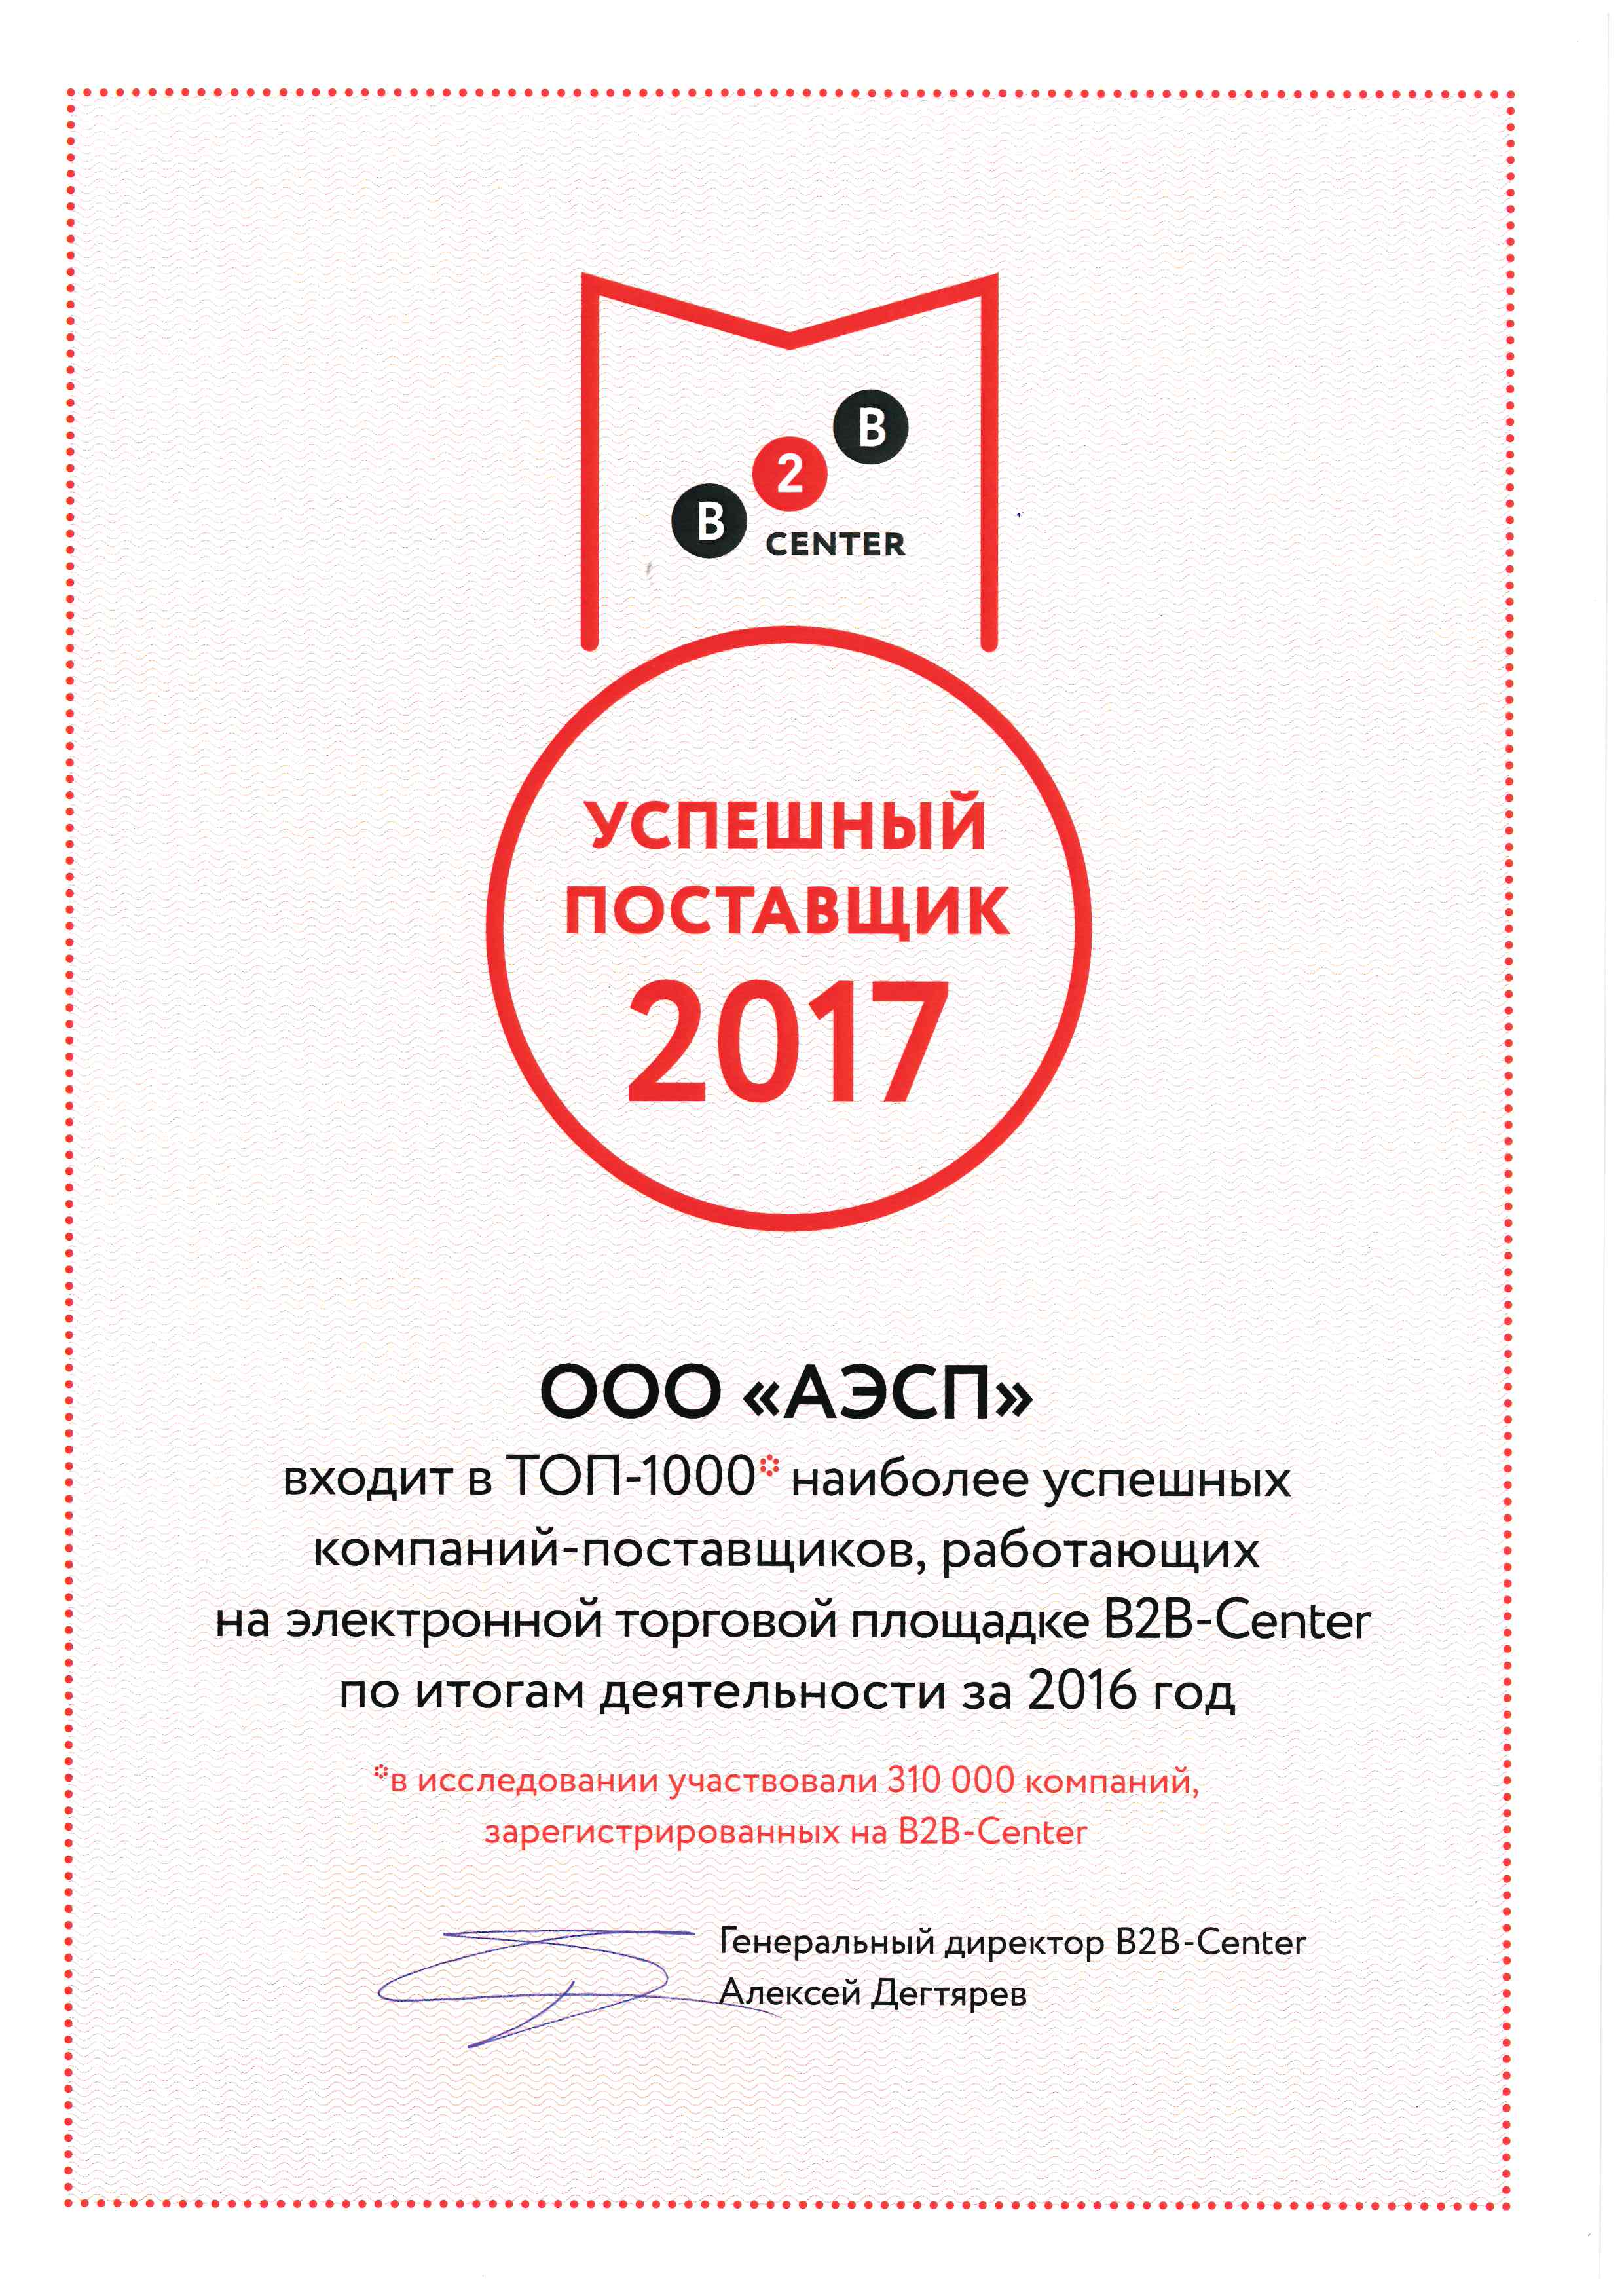 Сертификат B2B-Center "Успешный поставщик 2017"